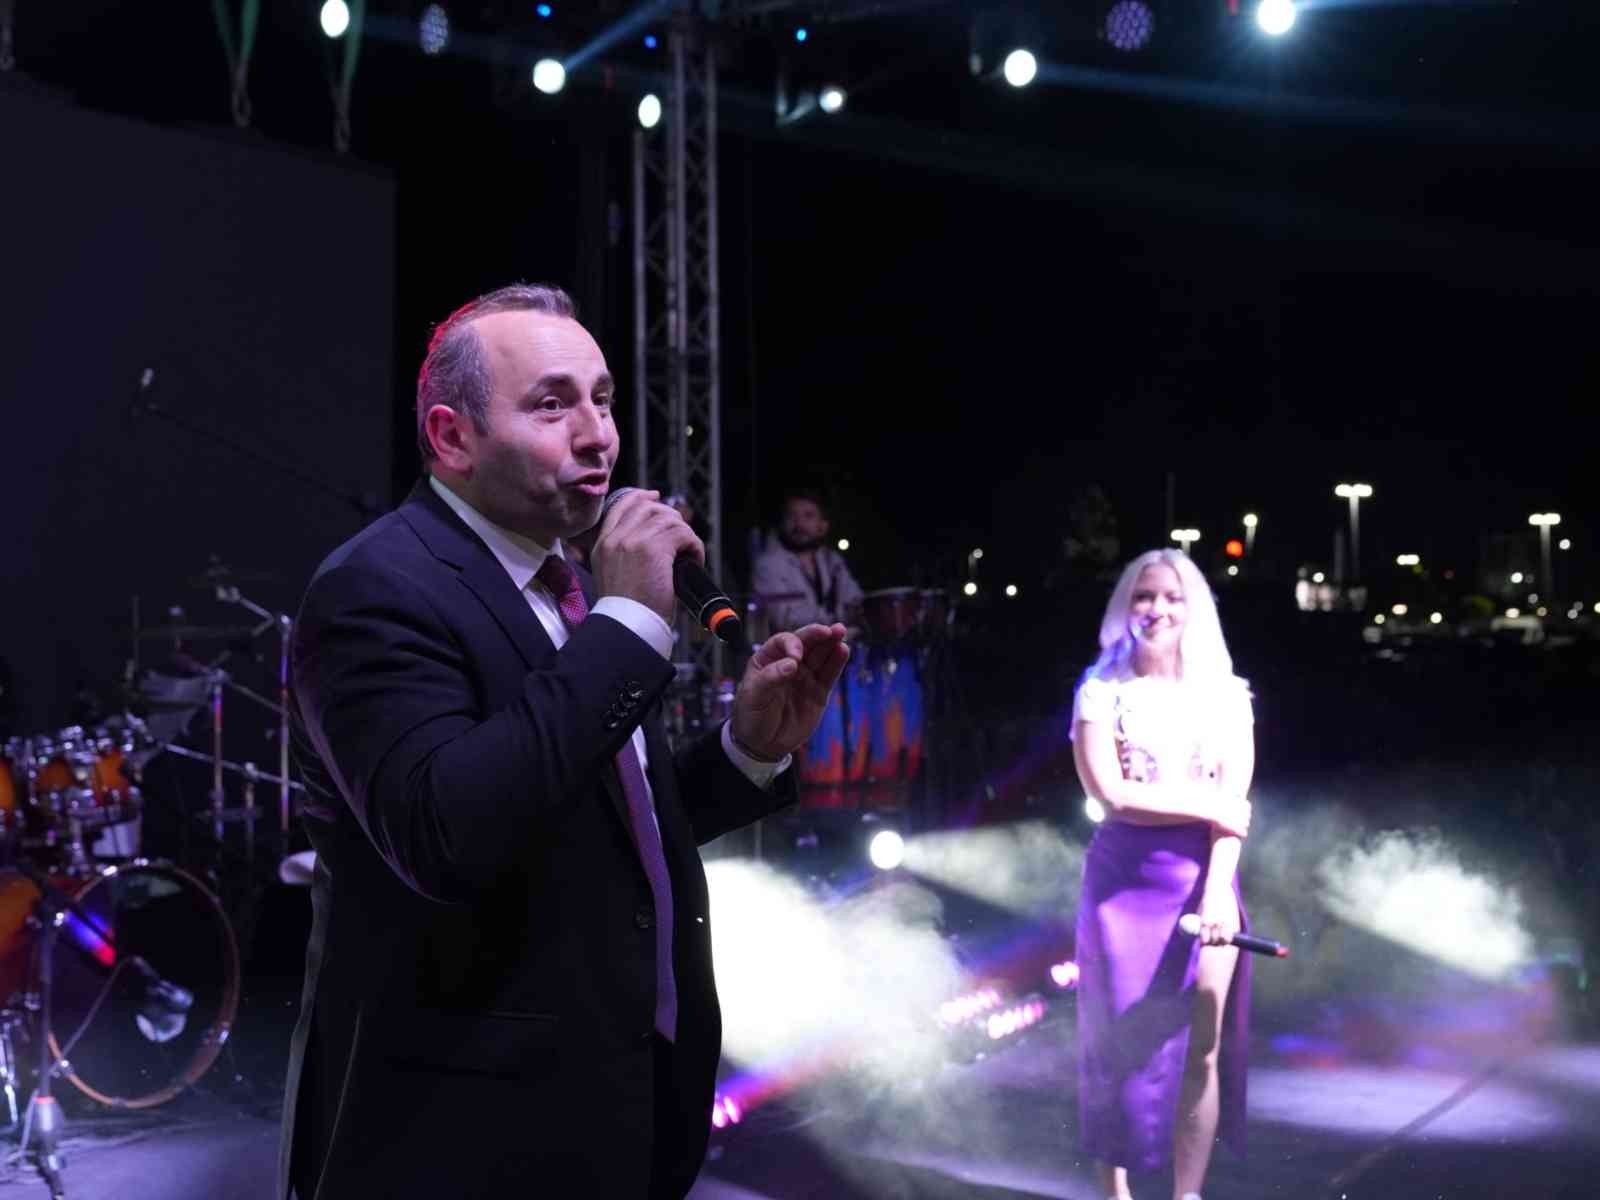 Yalova Üniversitesi’nin Yalova Belediyesi ile birlikte düzenlediği YUNİFESST’22’de sahne alan ünlü şarkıcı Ece Seçkin, festivale damgasını vurdu ...